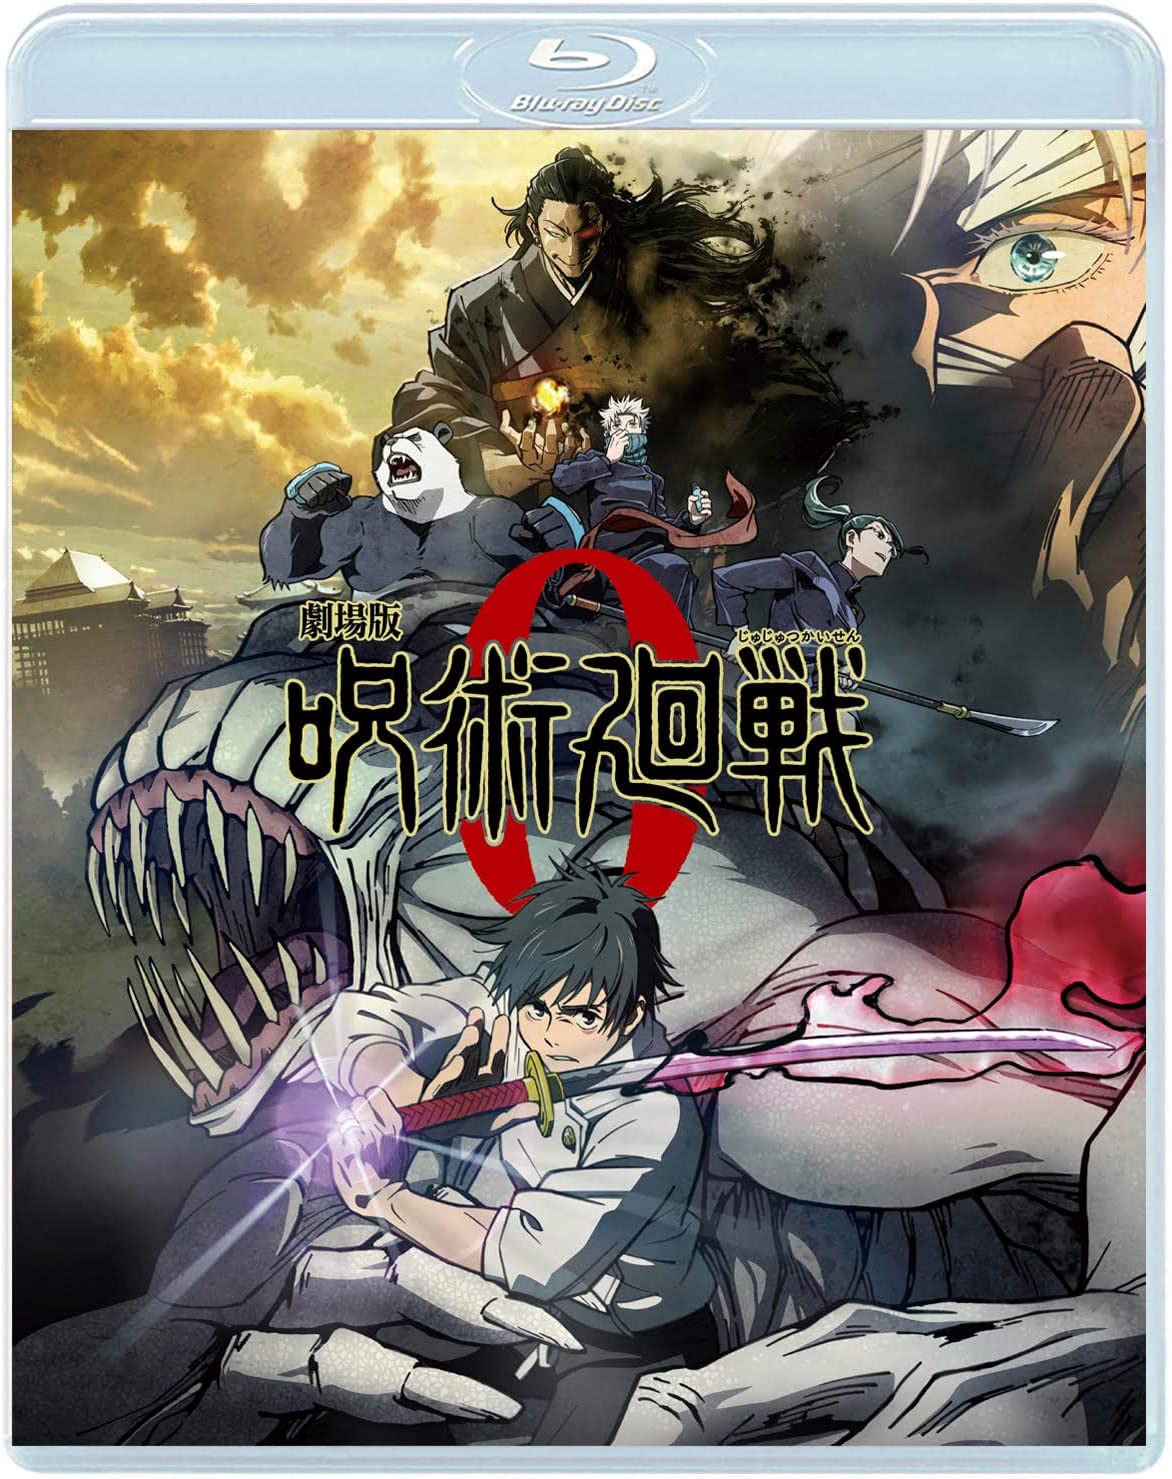 BD/DVD「呪術廻戦 0」9月21日に発売決定 | てるとく